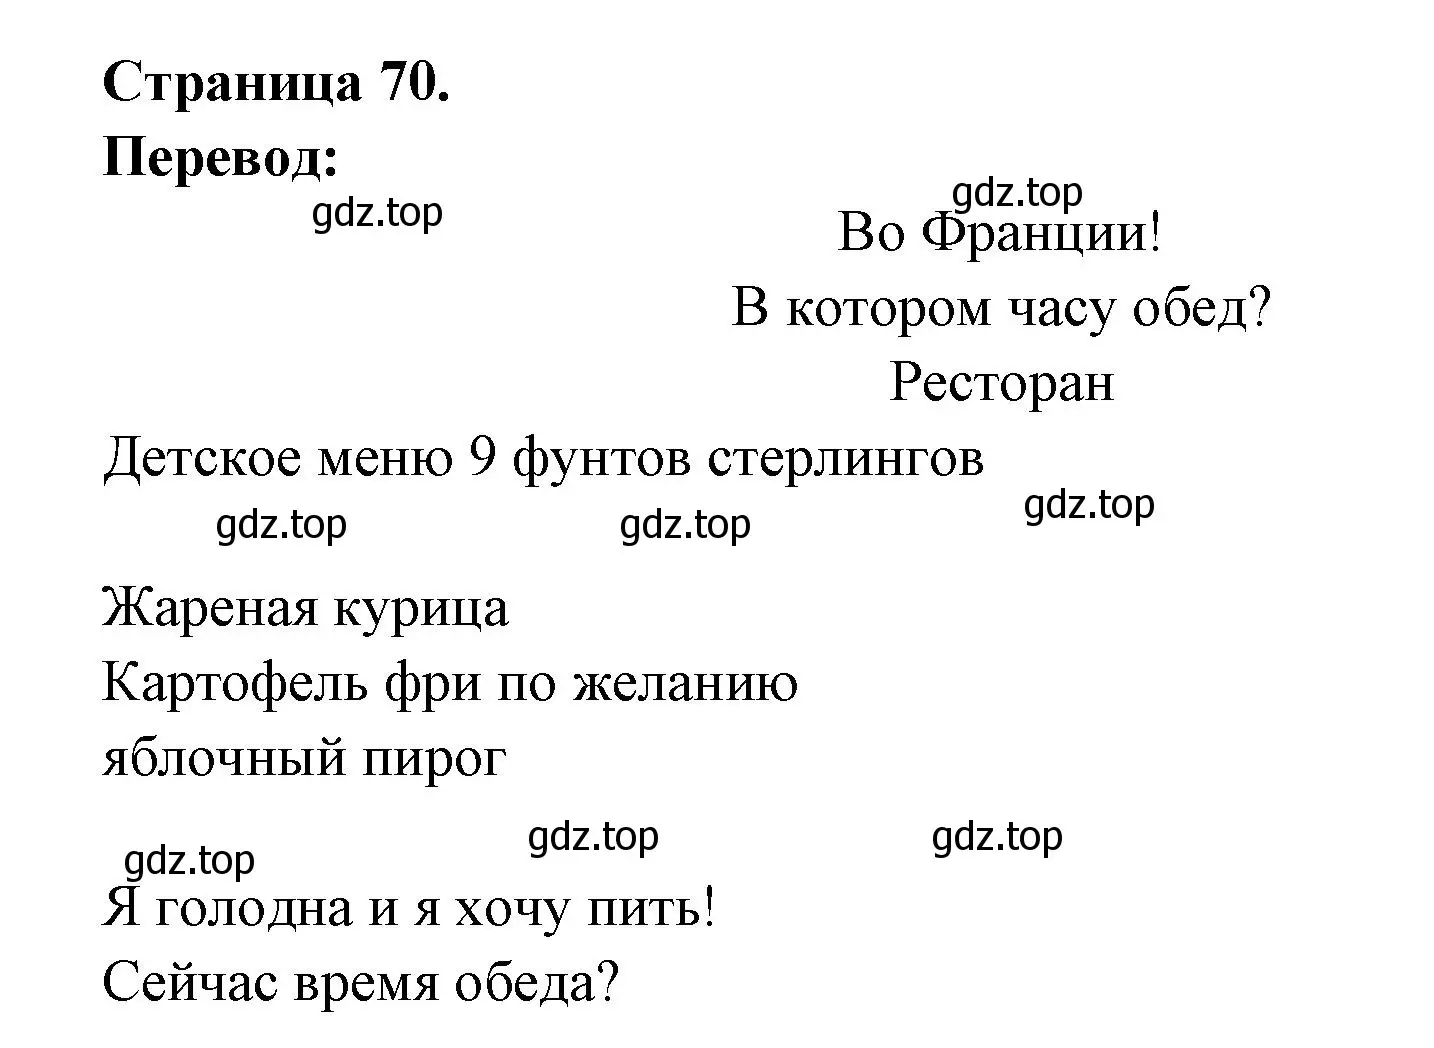 Решение  70 (страница 70) гдз по французскому языку 3 класс Кулигин, Кирьянова, учебник 1 часть